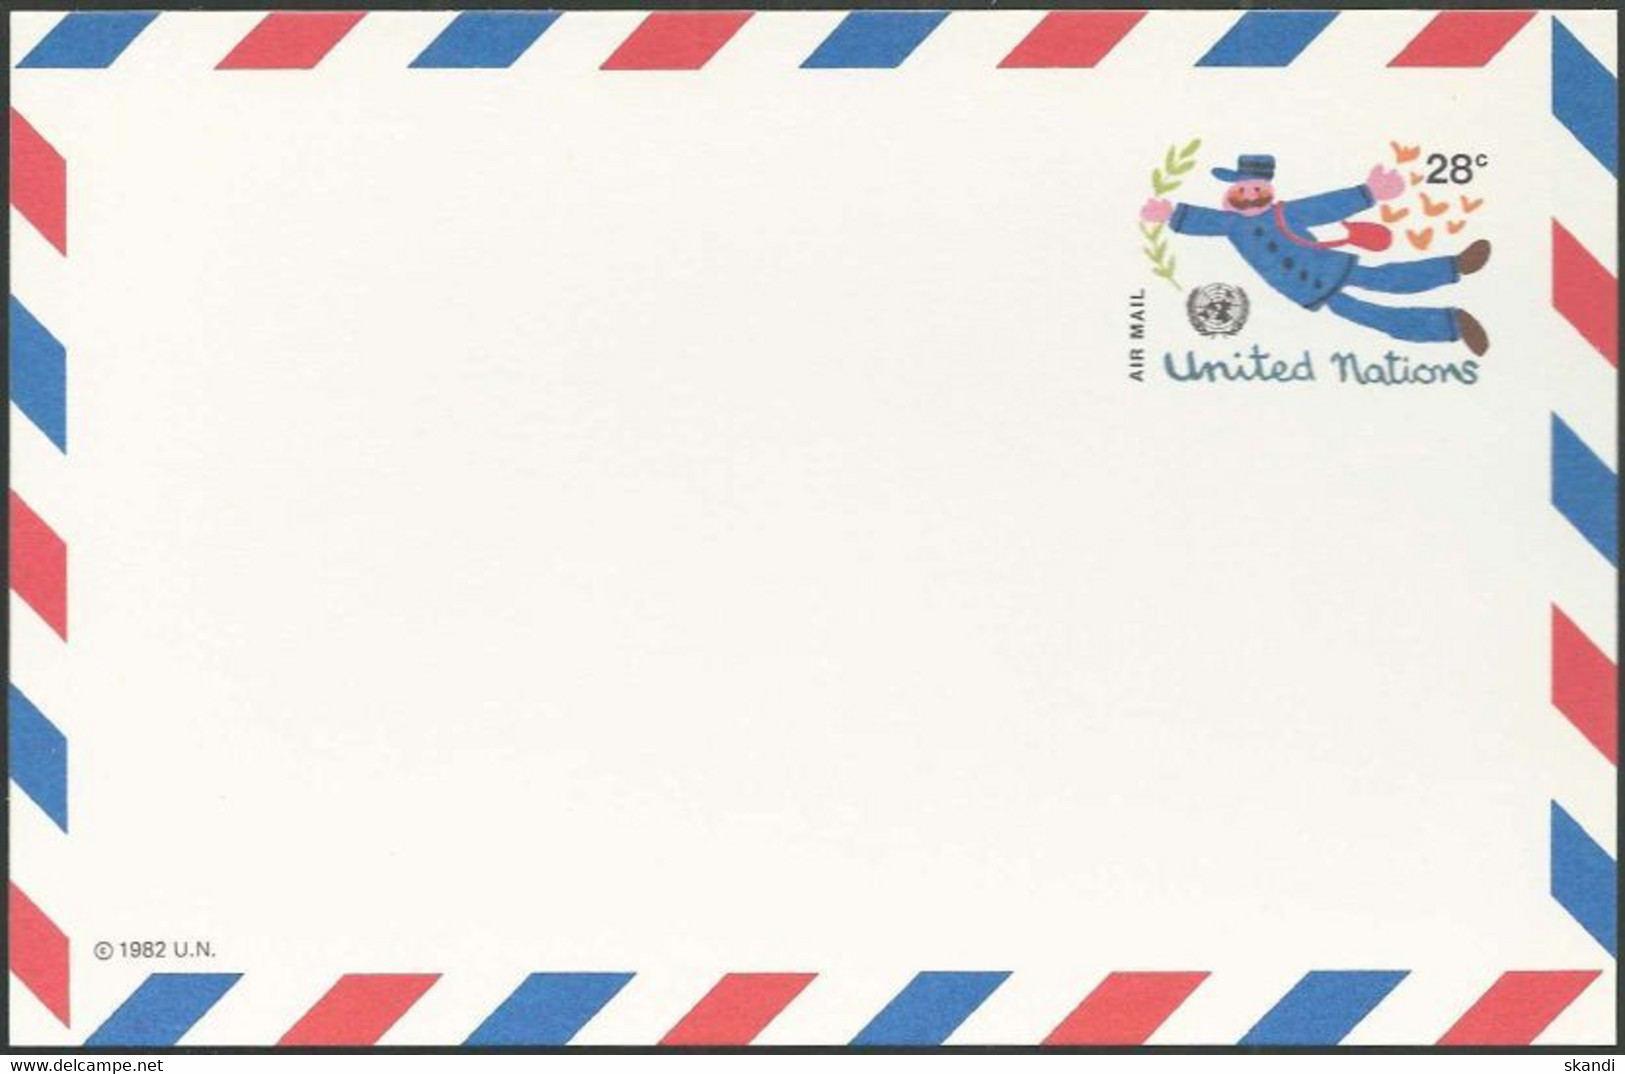 UNO NEW YORK 1982 Mi-Nr. LP 12 Ganzsache Luftpostkarte Ungebraucht - Posta Aerea